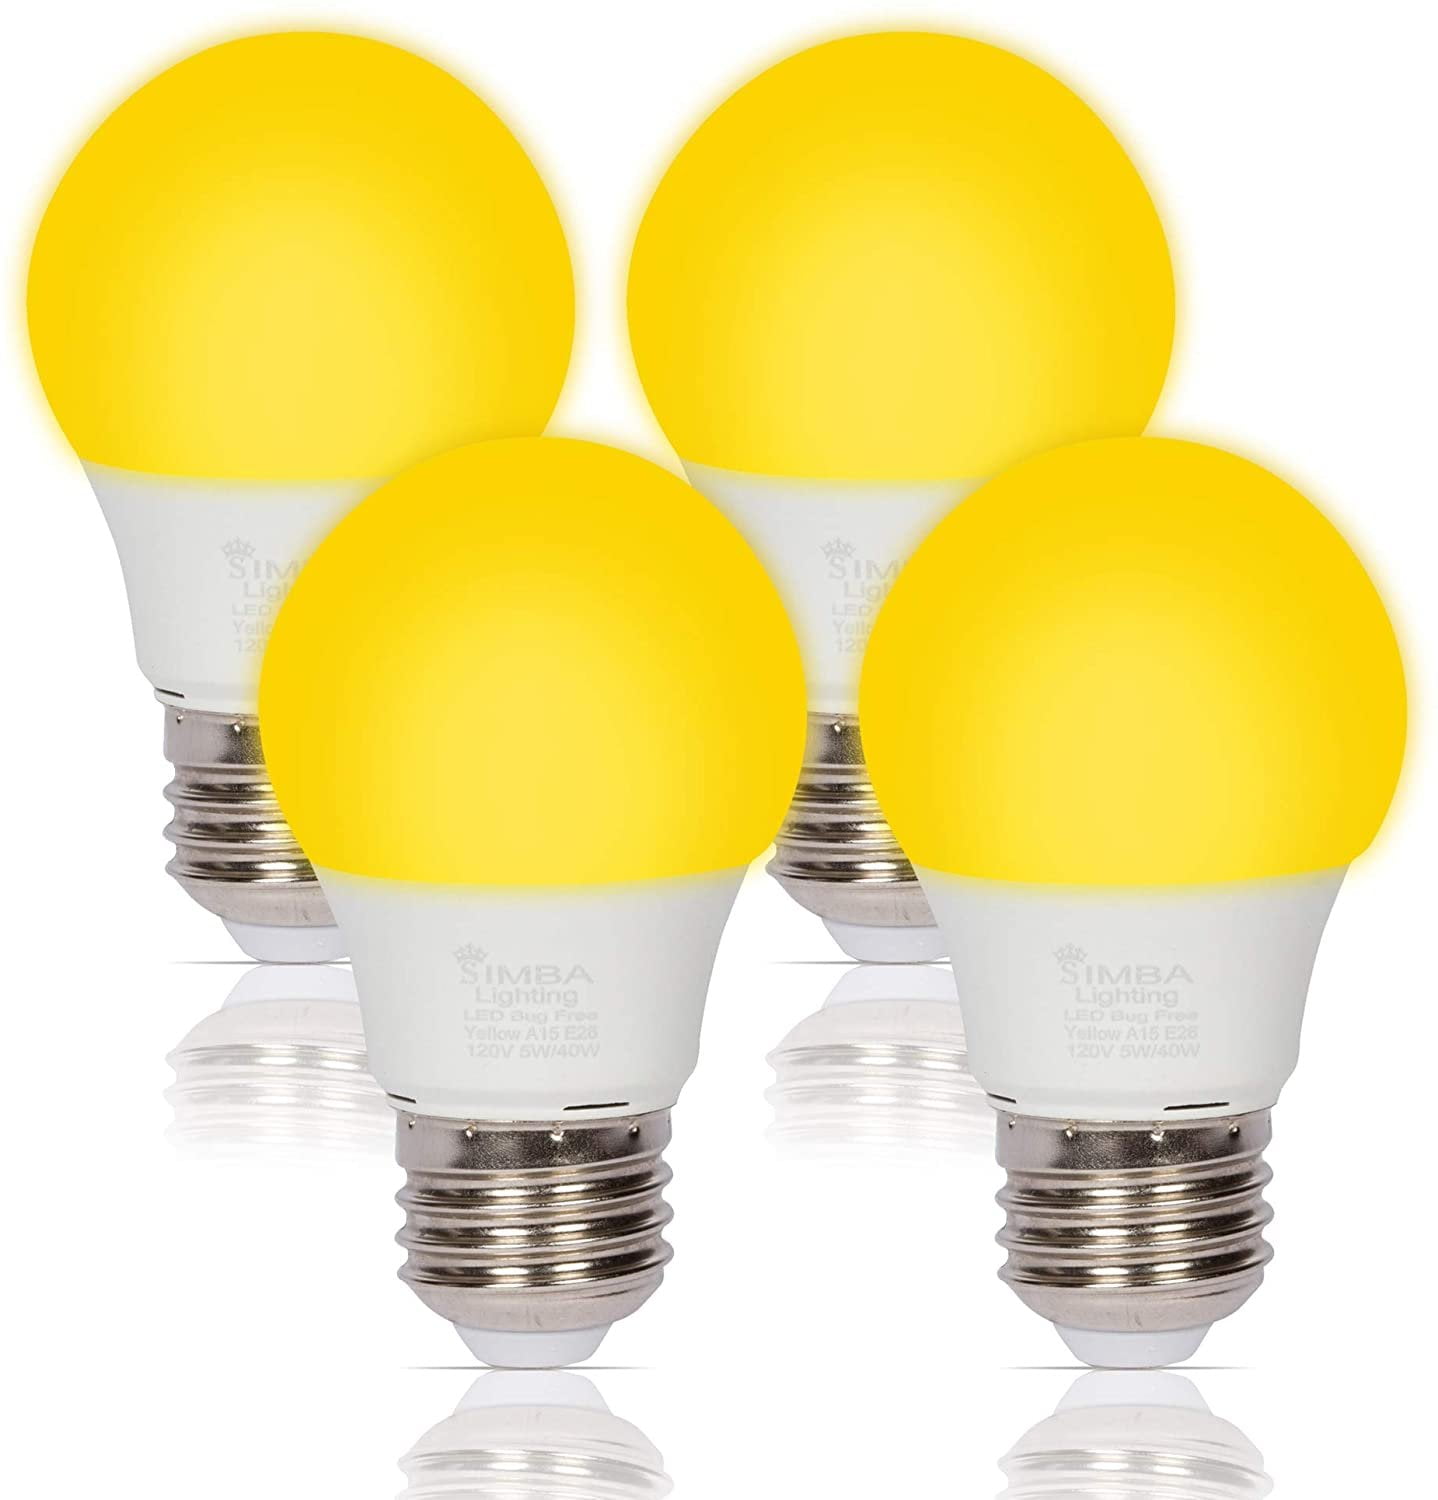 Miracle LED (606758) foco de luz contra insectos, color amarillo, reemplaza  a 100 vatios, S19 para exteriores, para porche y patio, 2 unidades